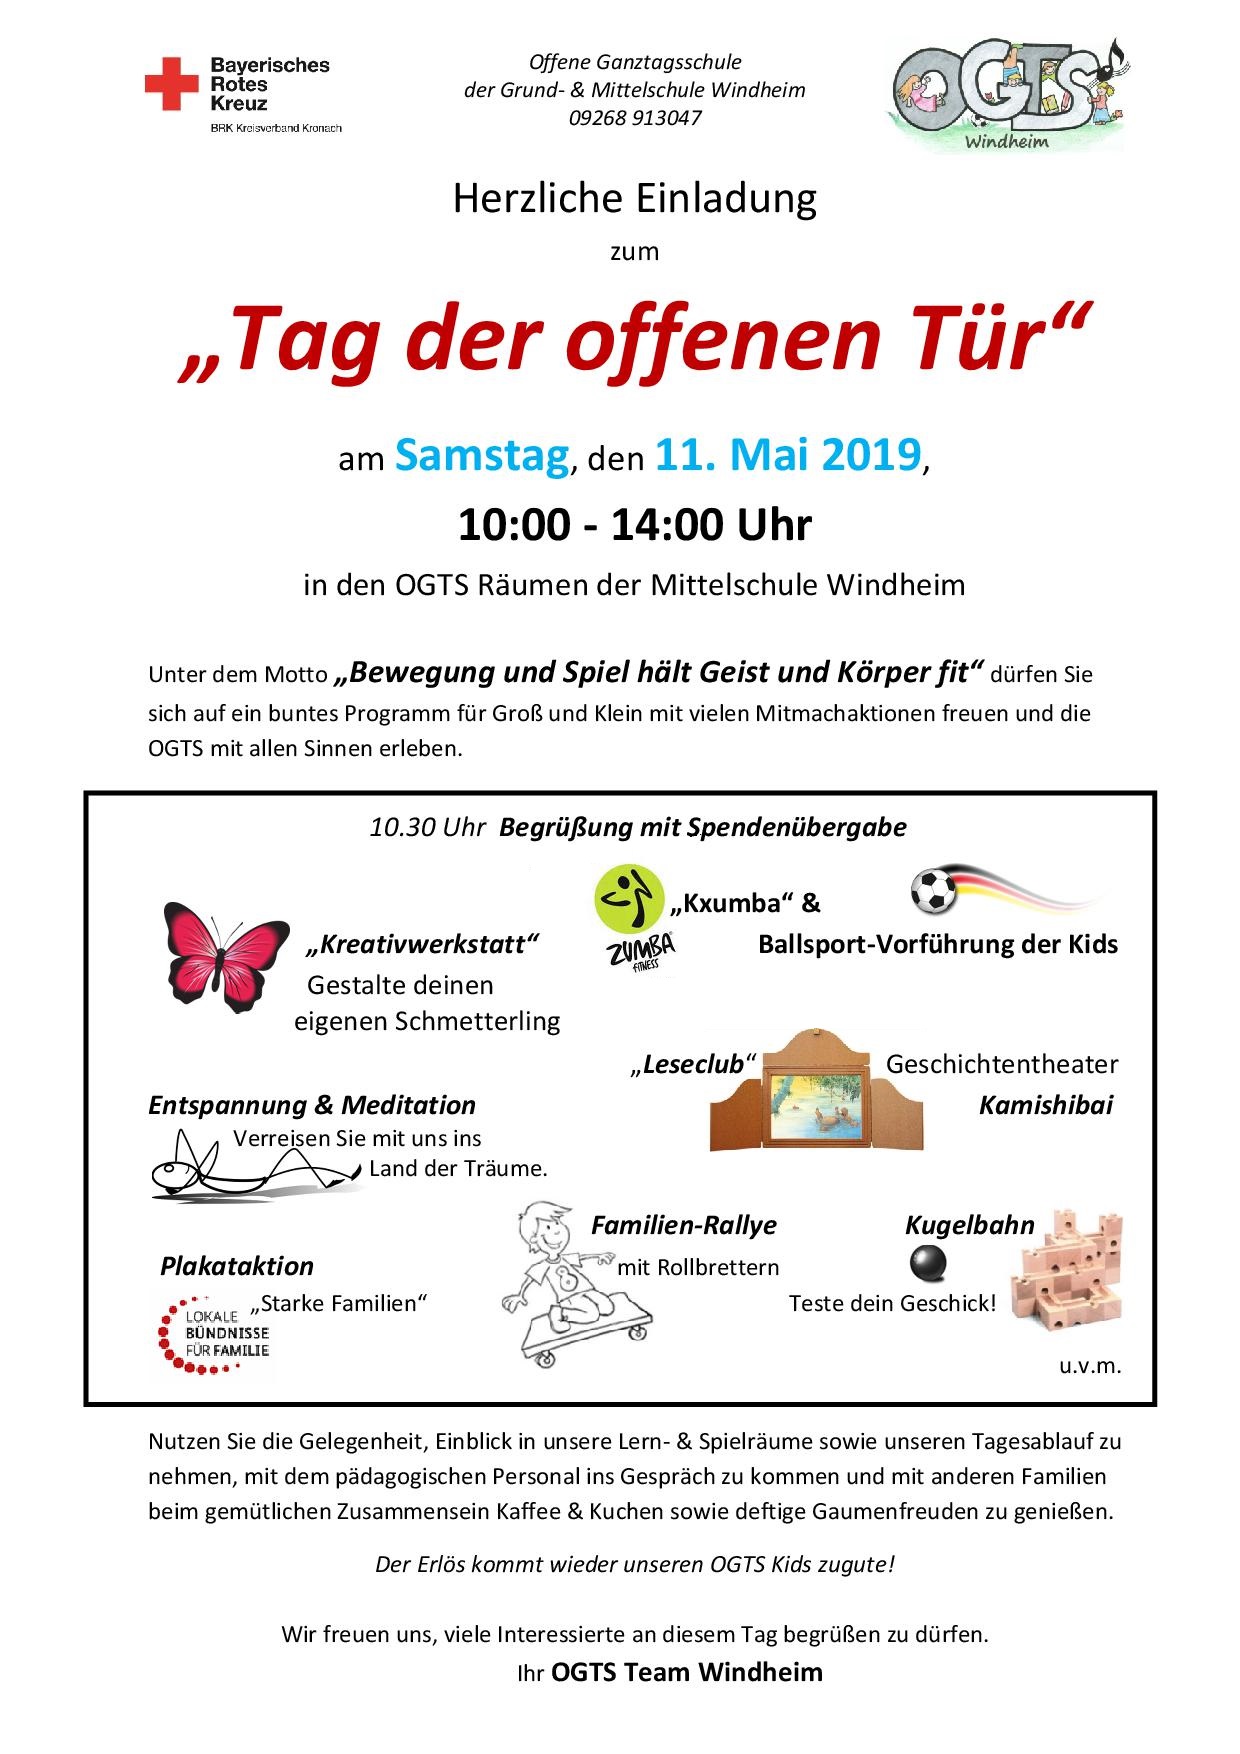 Herzliche Einladung zum „Tag der offenen Tür“ der OGTS Mittelschule Windheim